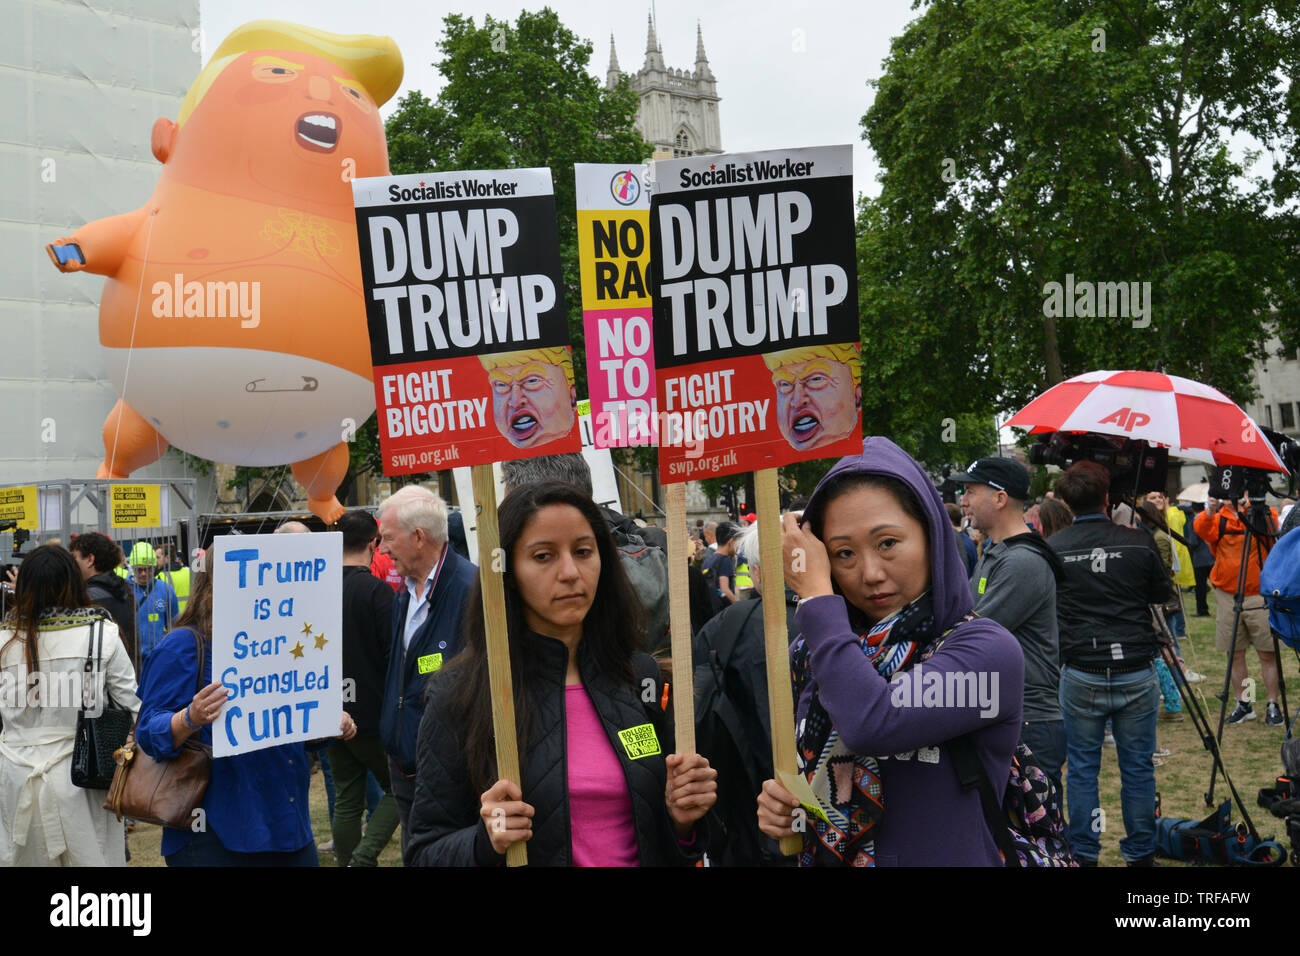 US-Präsident Donald Trump Besuch in London, UK. Tausende von Menschen haben in den Straßen von London Großbritannien Staatsbesuch von Donald Trump zu protestieren. Stockfoto